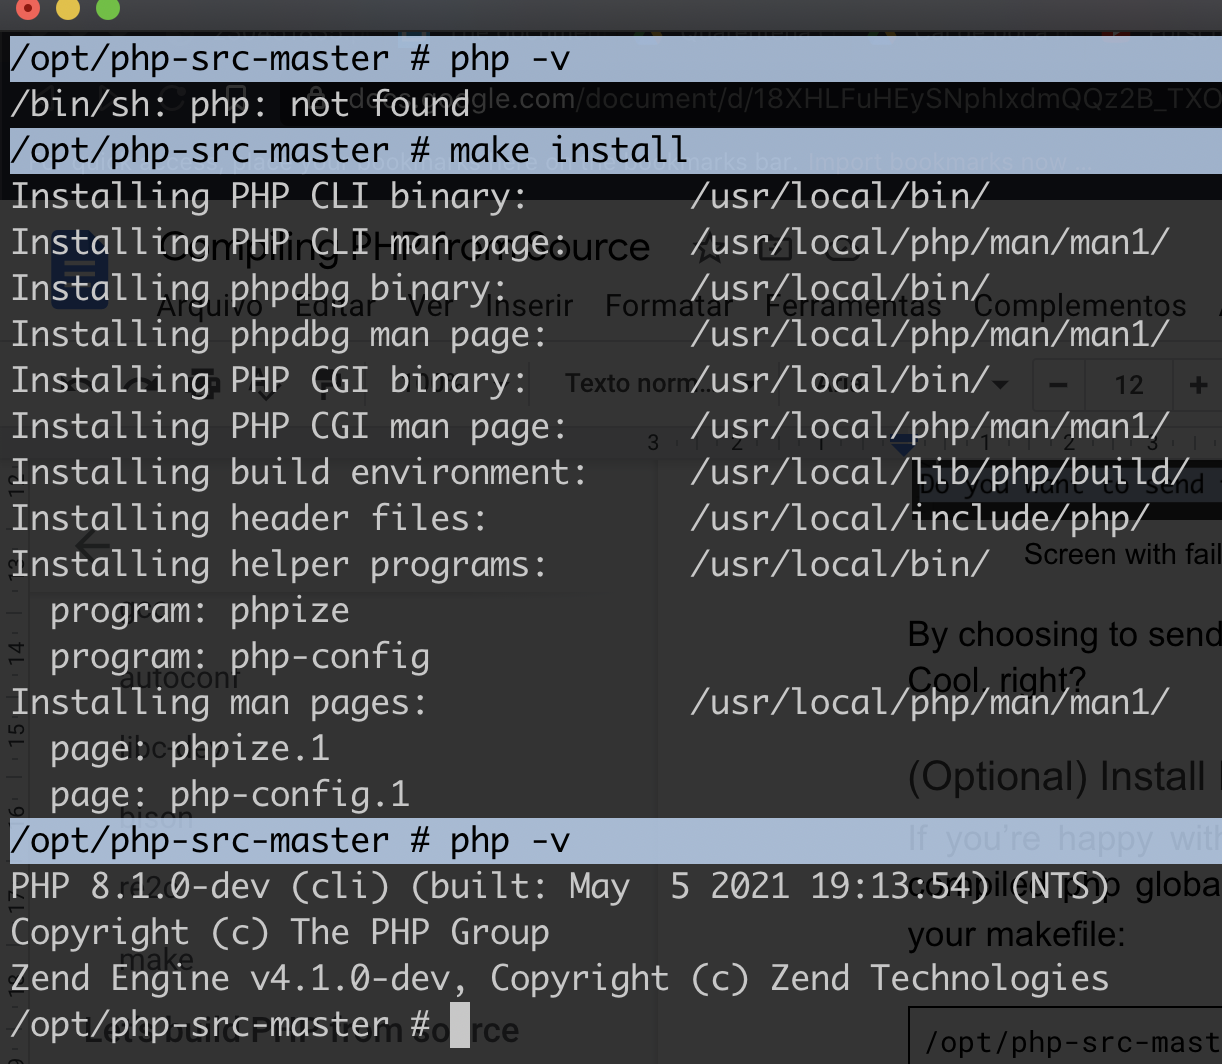 Resultado da tarefa "make install". Ilustra que "php -v" mostra a versão "8.1.0-dev", mais atual no momento em que escrevo este tutorial.